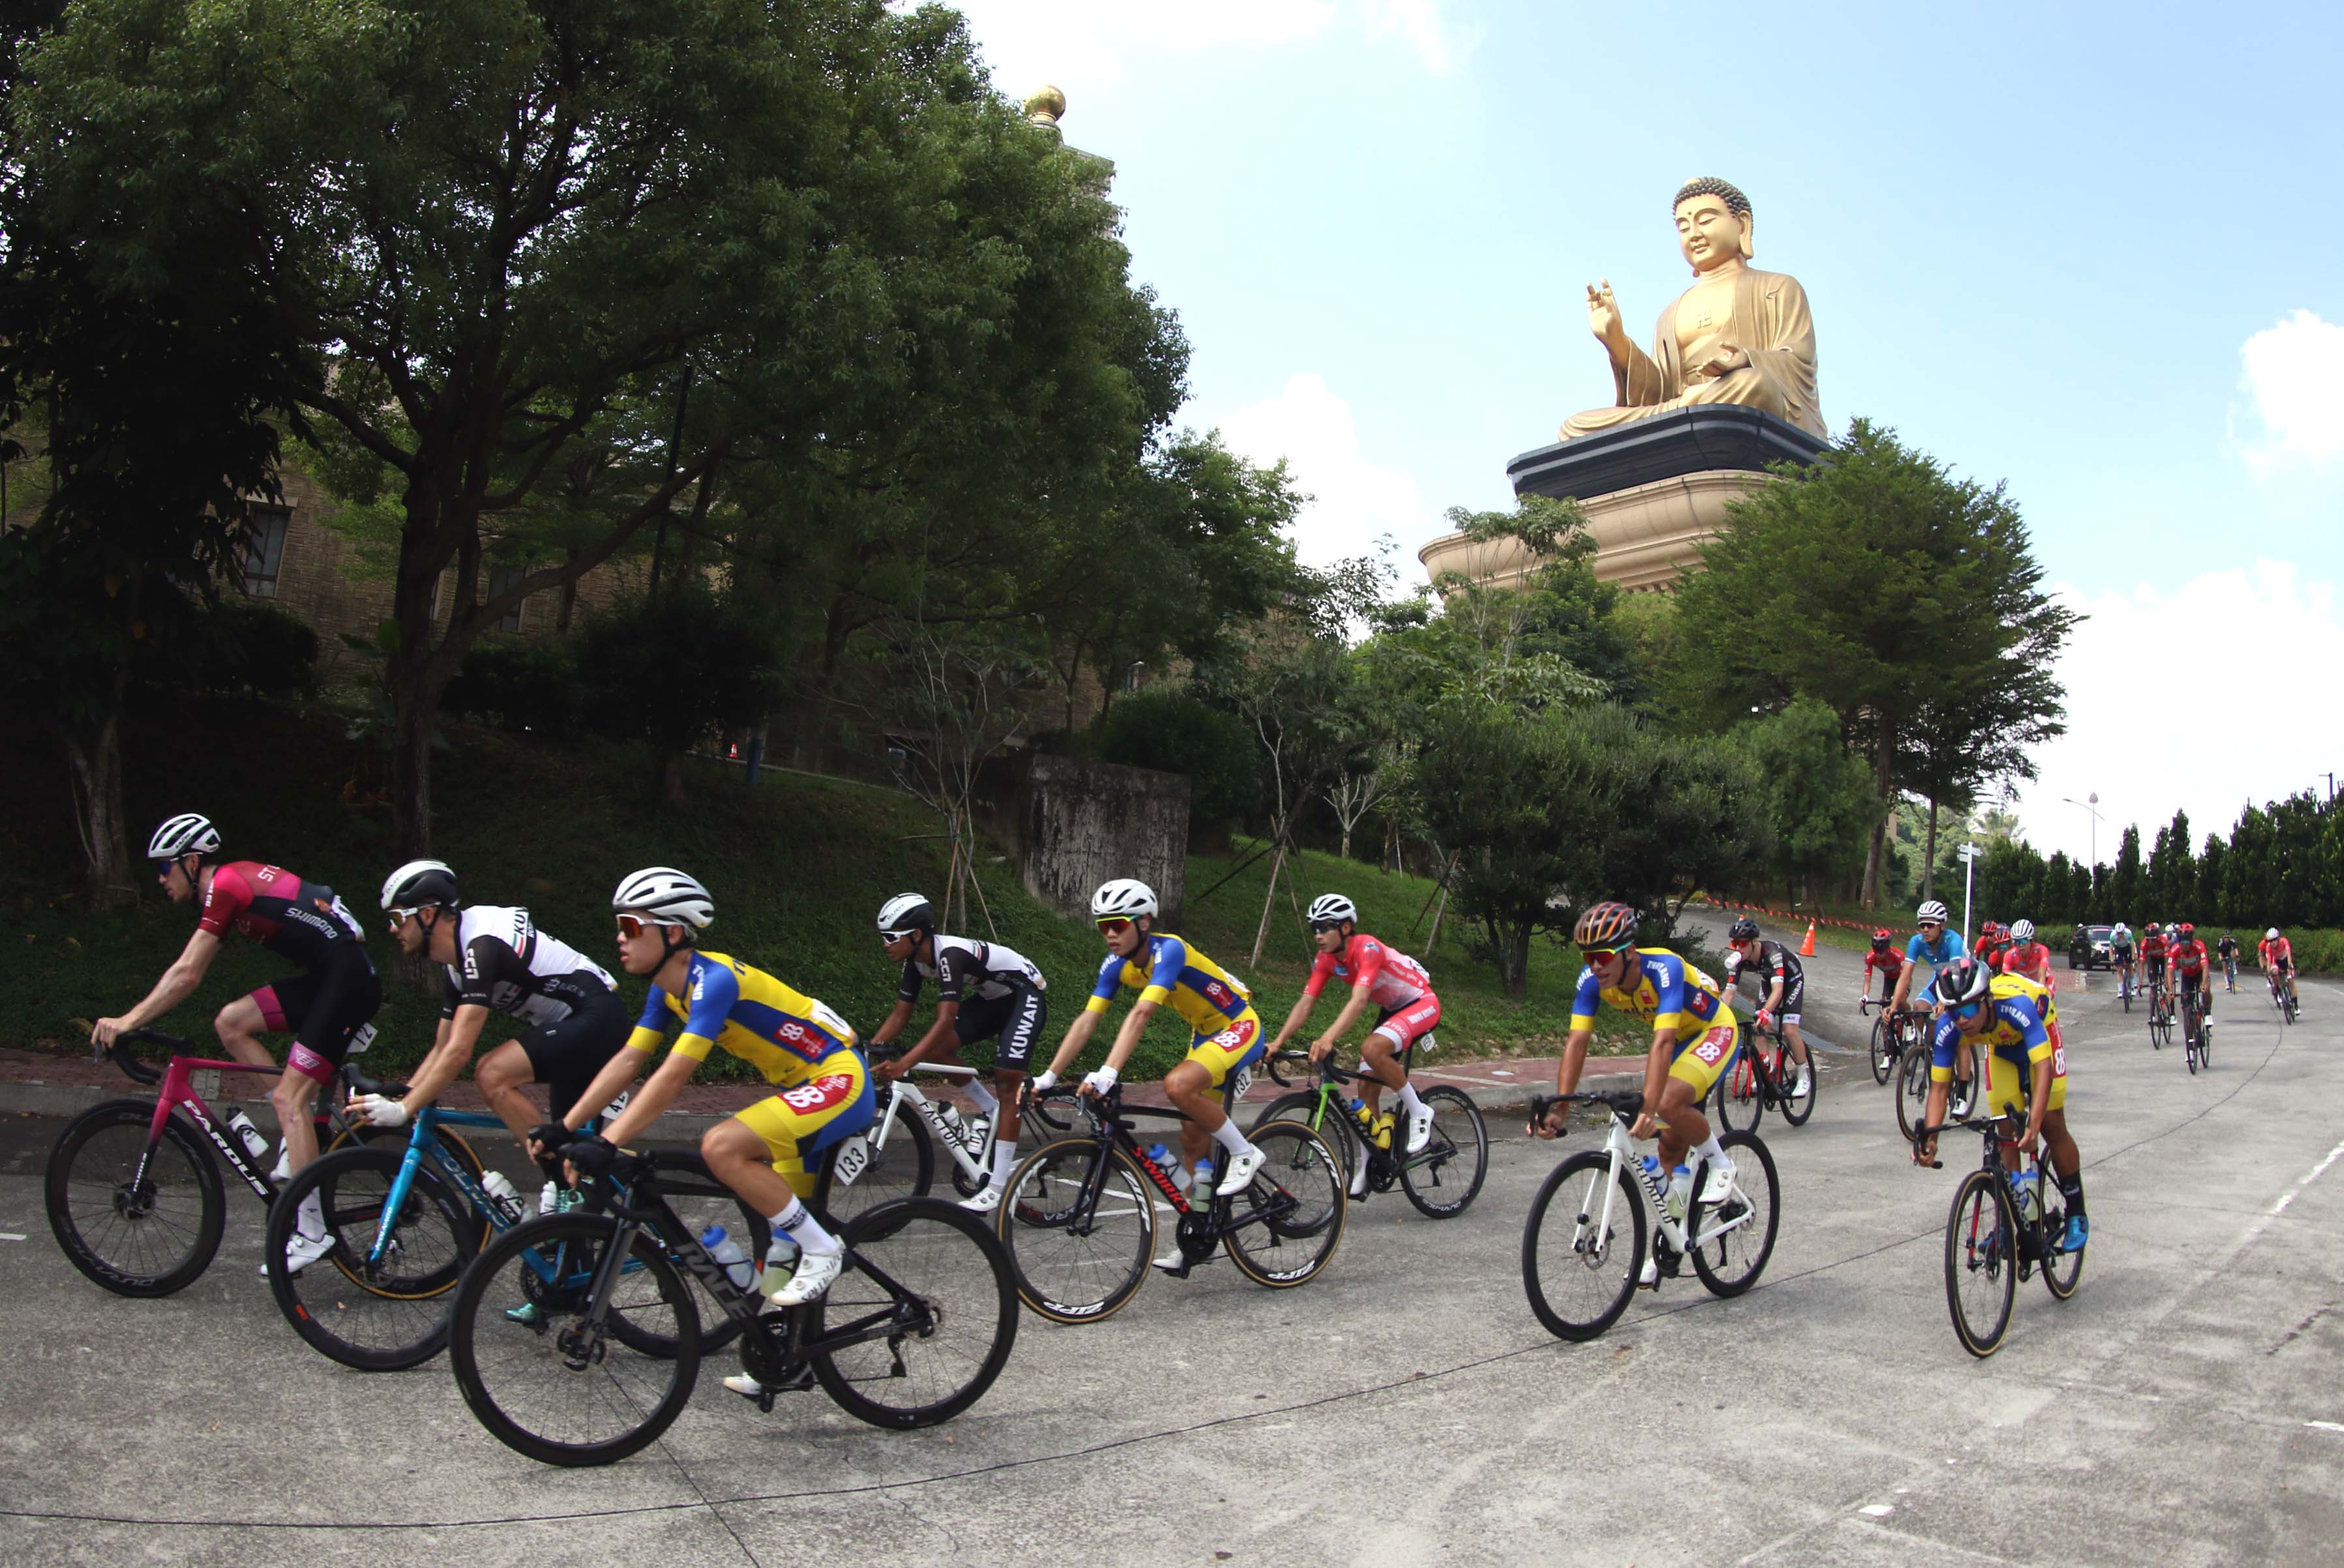 高雄市站賽段繞行佛陀紀念館，在佛光山大佛加持下，參賽選手全力爭取佳績。Tour de Taiwan 國際自由車環台賽提供